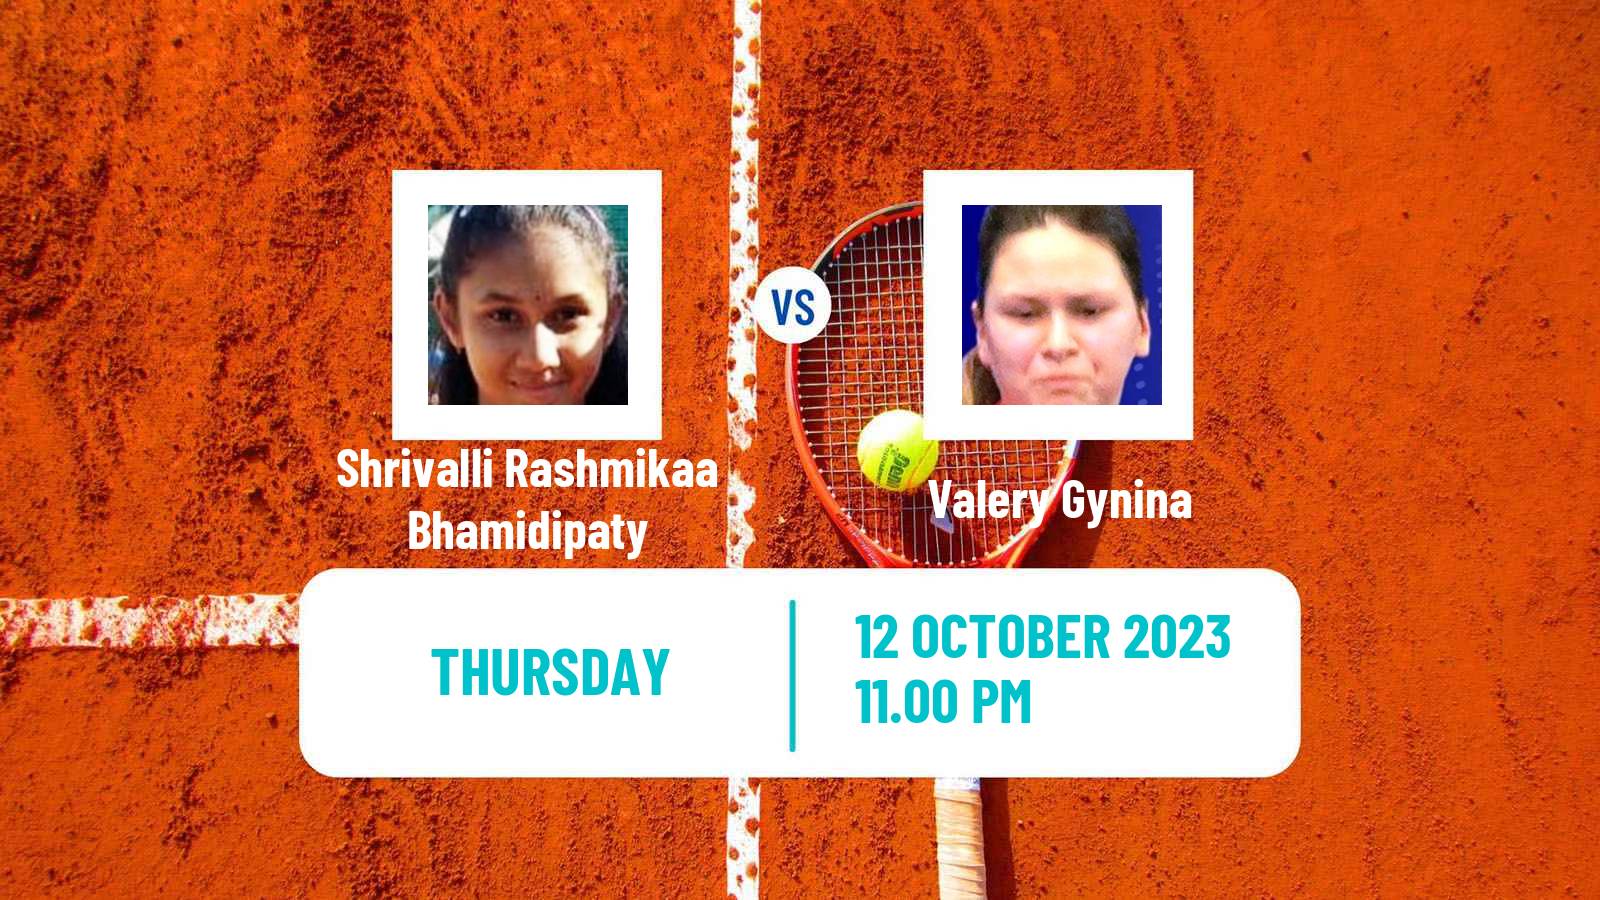 Tennis ITF W15 Hua Hin Women Shrivalli Rashmikaa Bhamidipaty - Valery Gynina